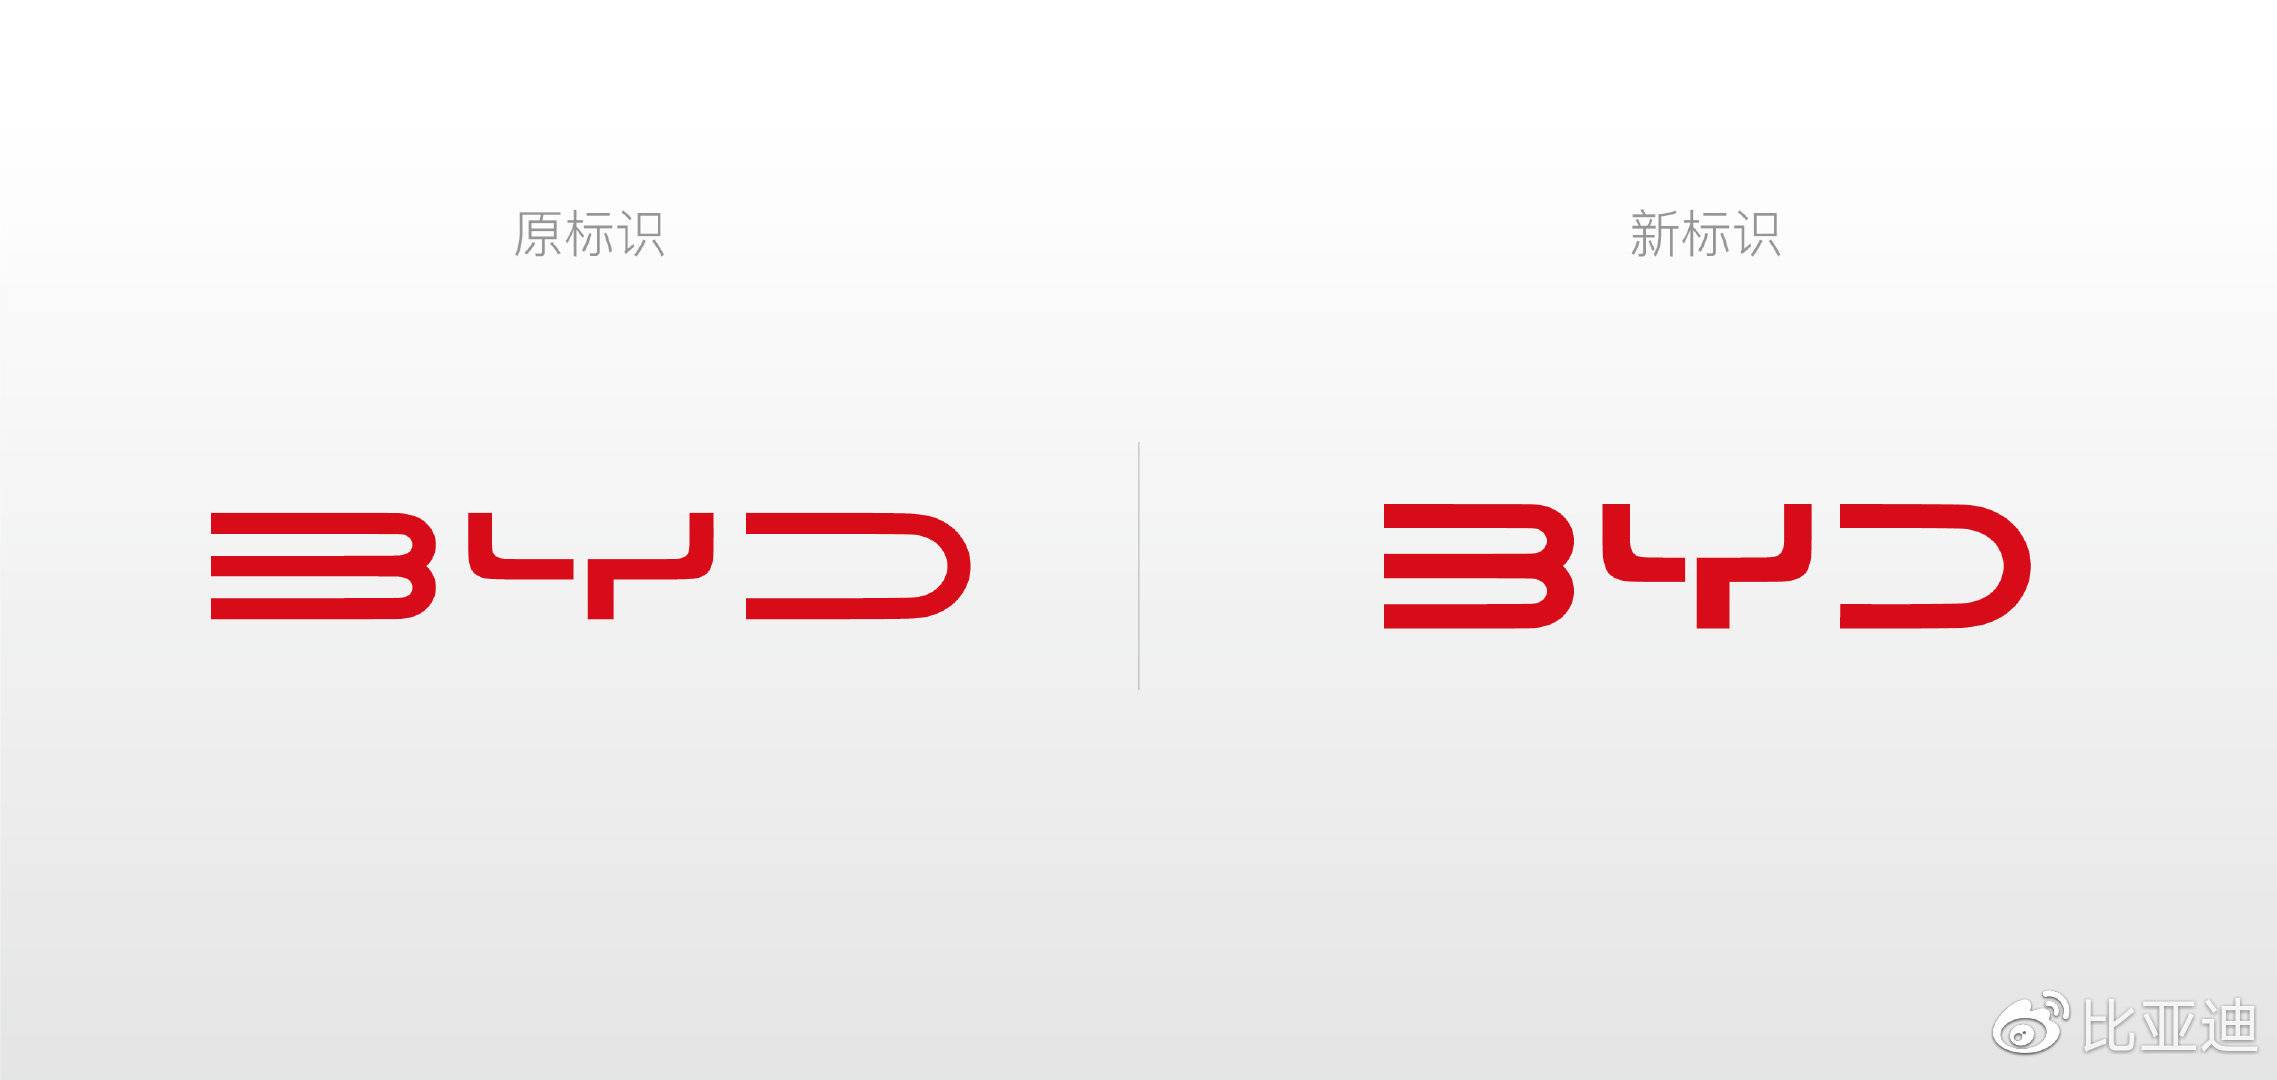 比亚迪换logo品牌升级 新旧logo对比图_1